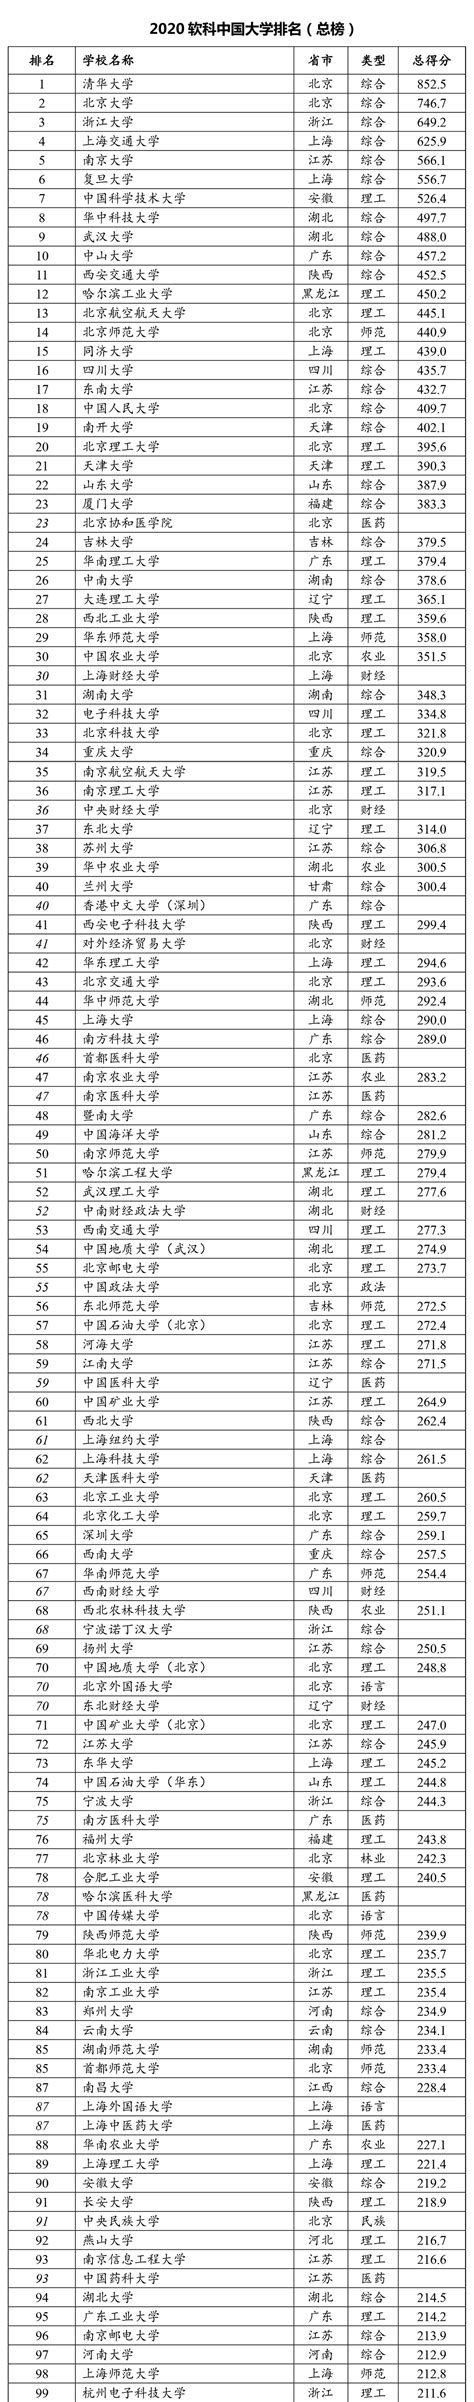 2020软科中国大学排名发布 85所双一流高校位列百强 - 国际教育最 ...